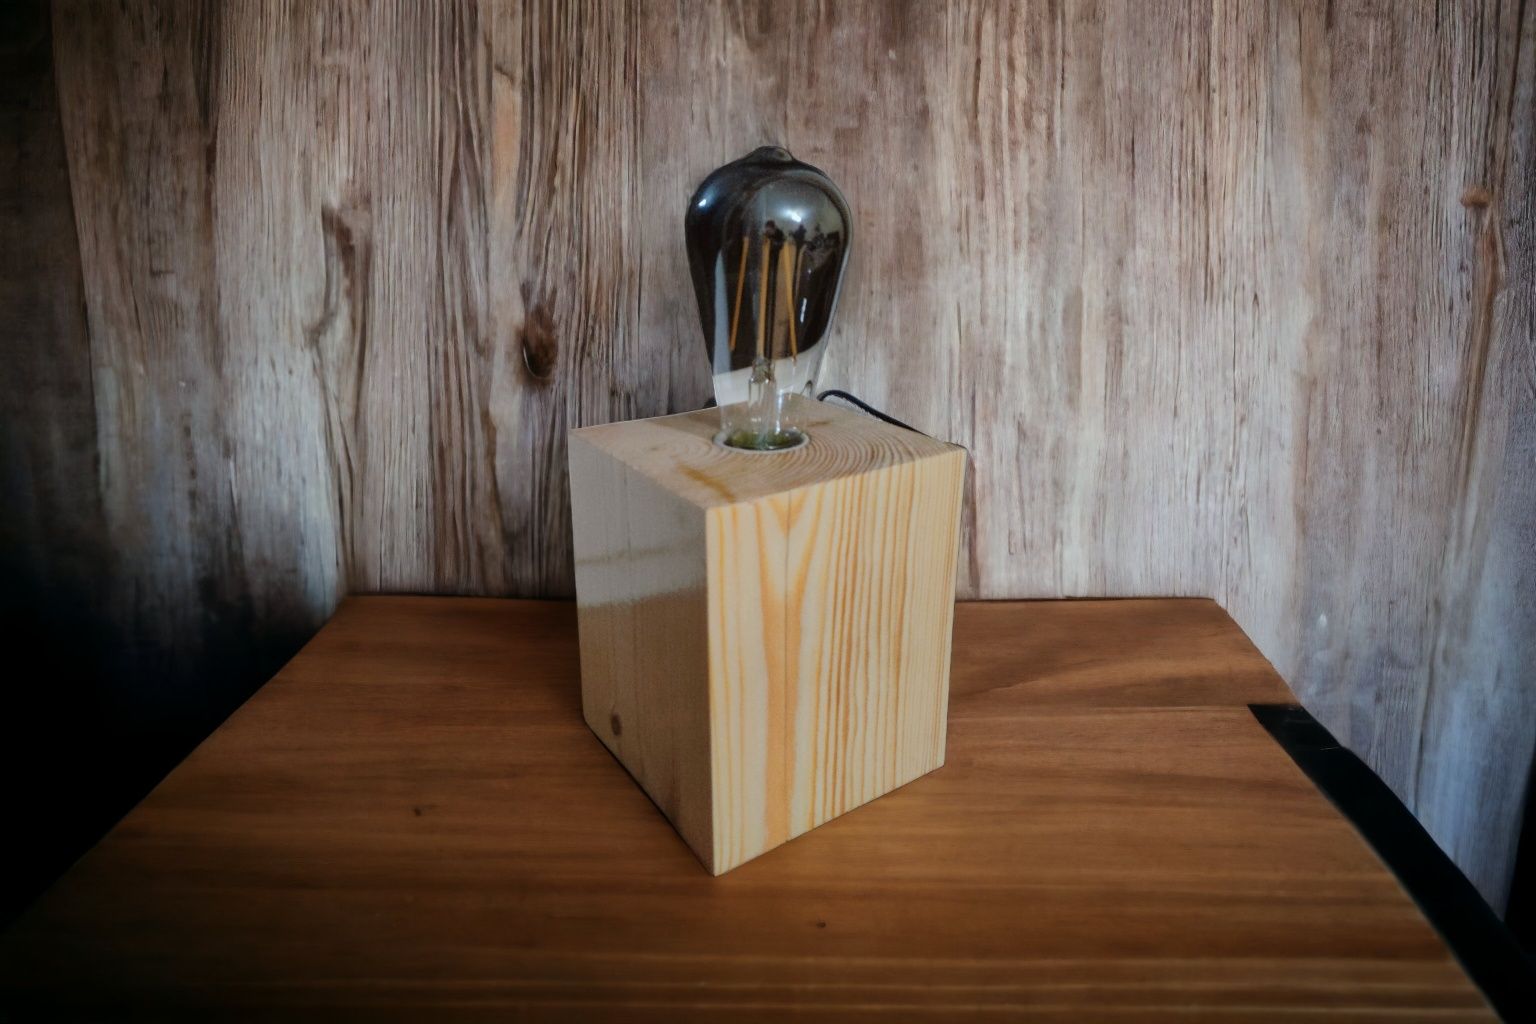 Lampa stołowa drewniana